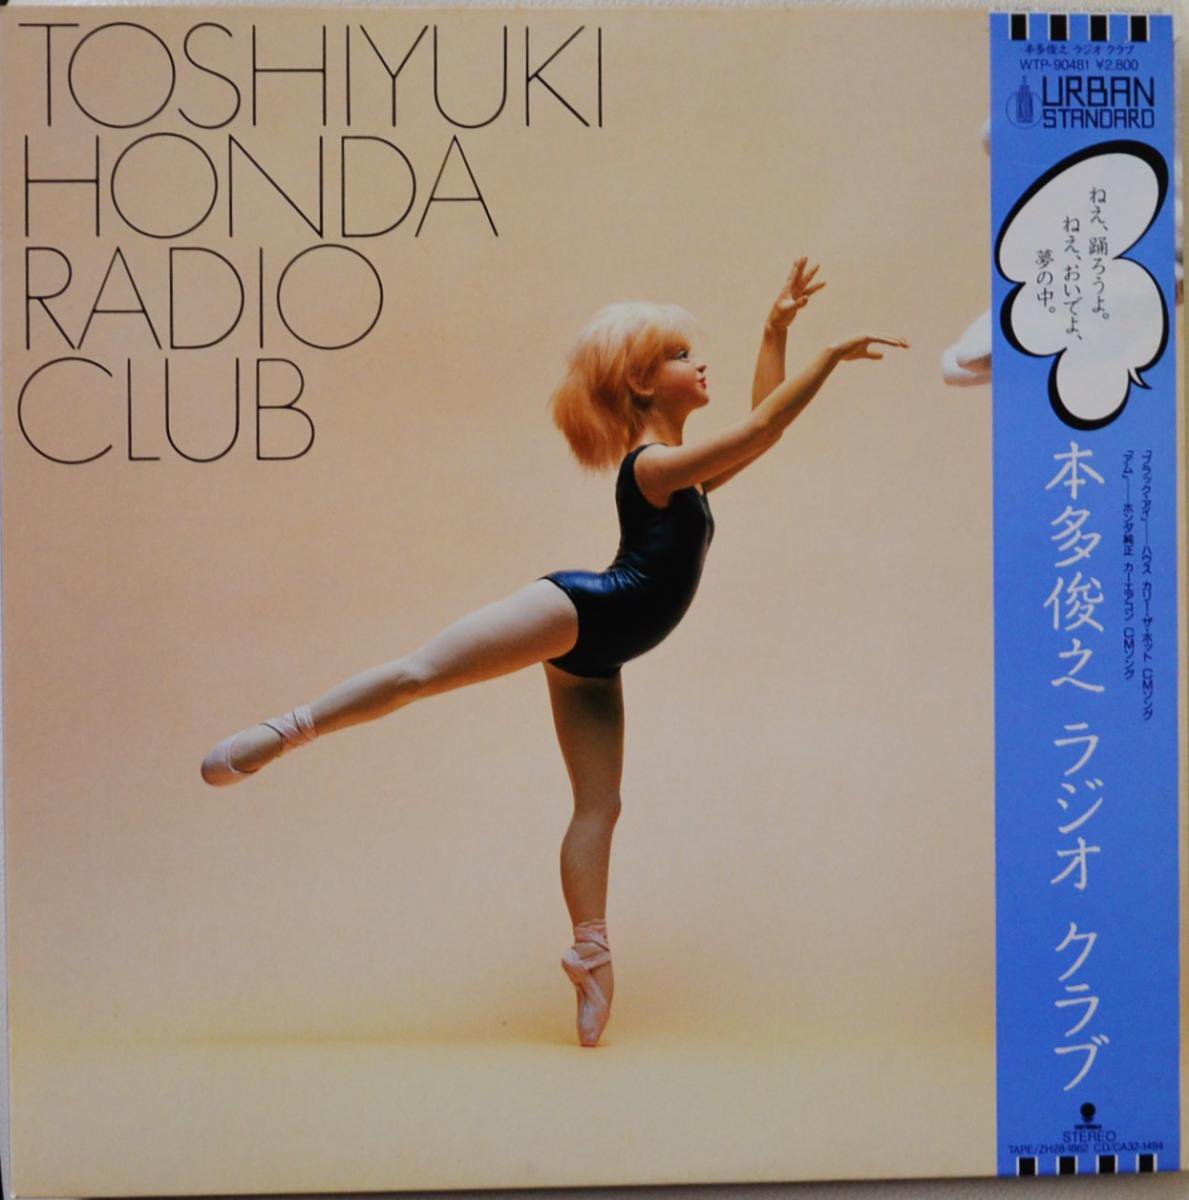 本多俊之 TOSHIYUKI HONDA / ラジオ クラブ RADIO CLUB (LP)